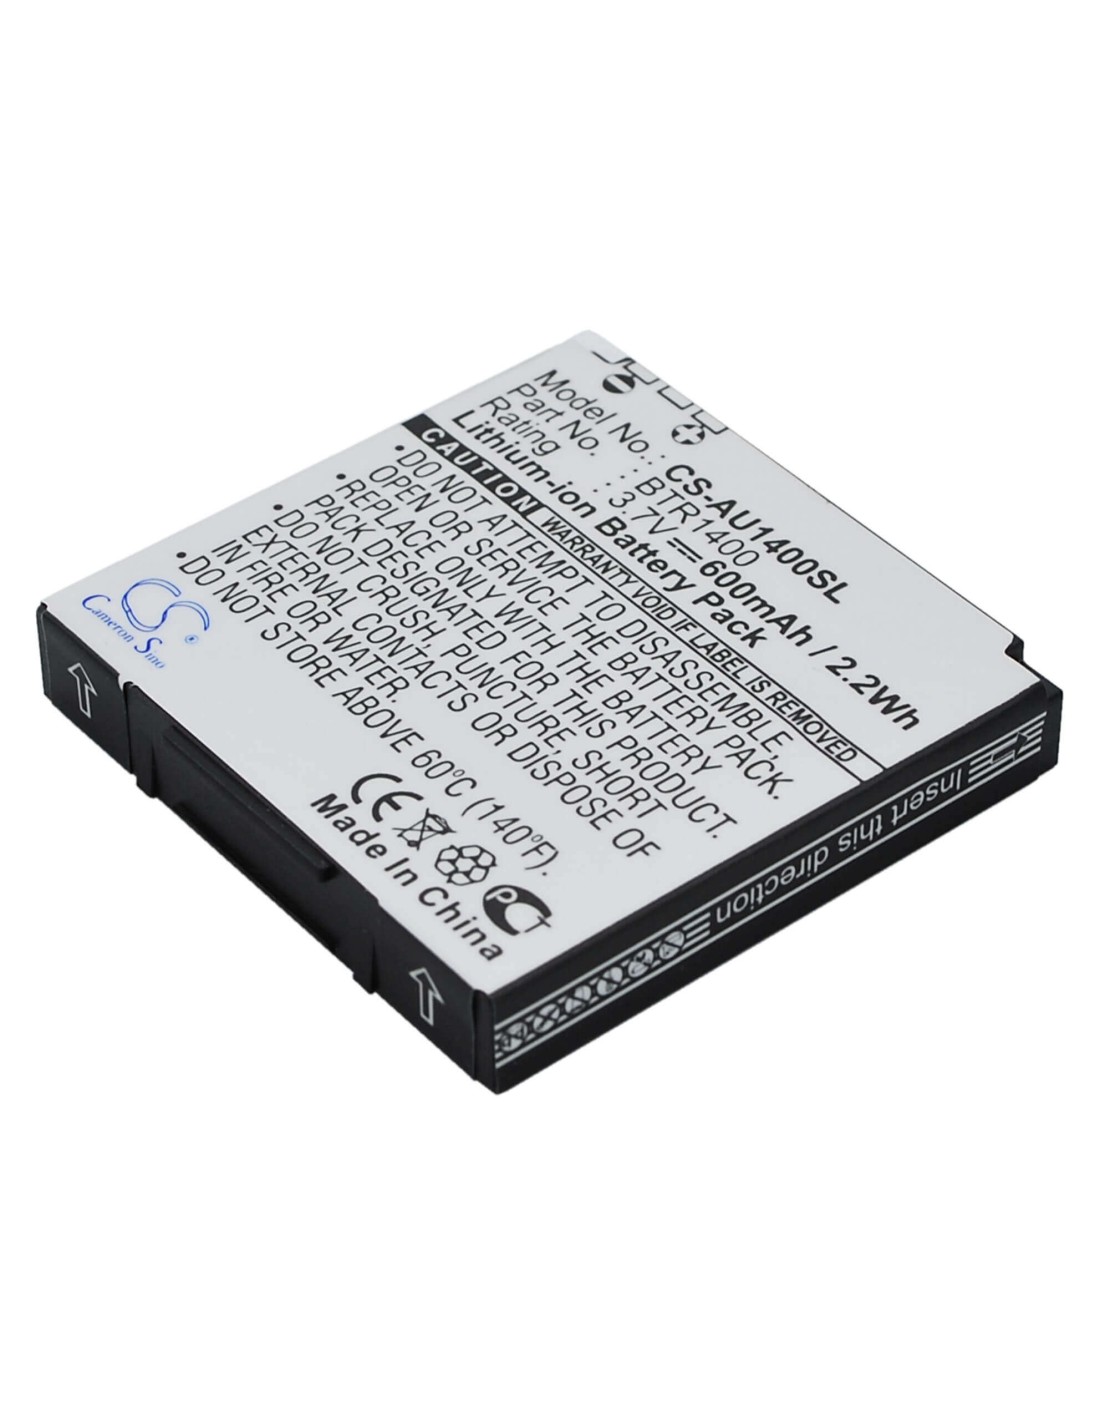 Battery for Audiovox CDM-1400, PCS-1400, PPC-1400 3.7V, 600mAh - 2.22Wh